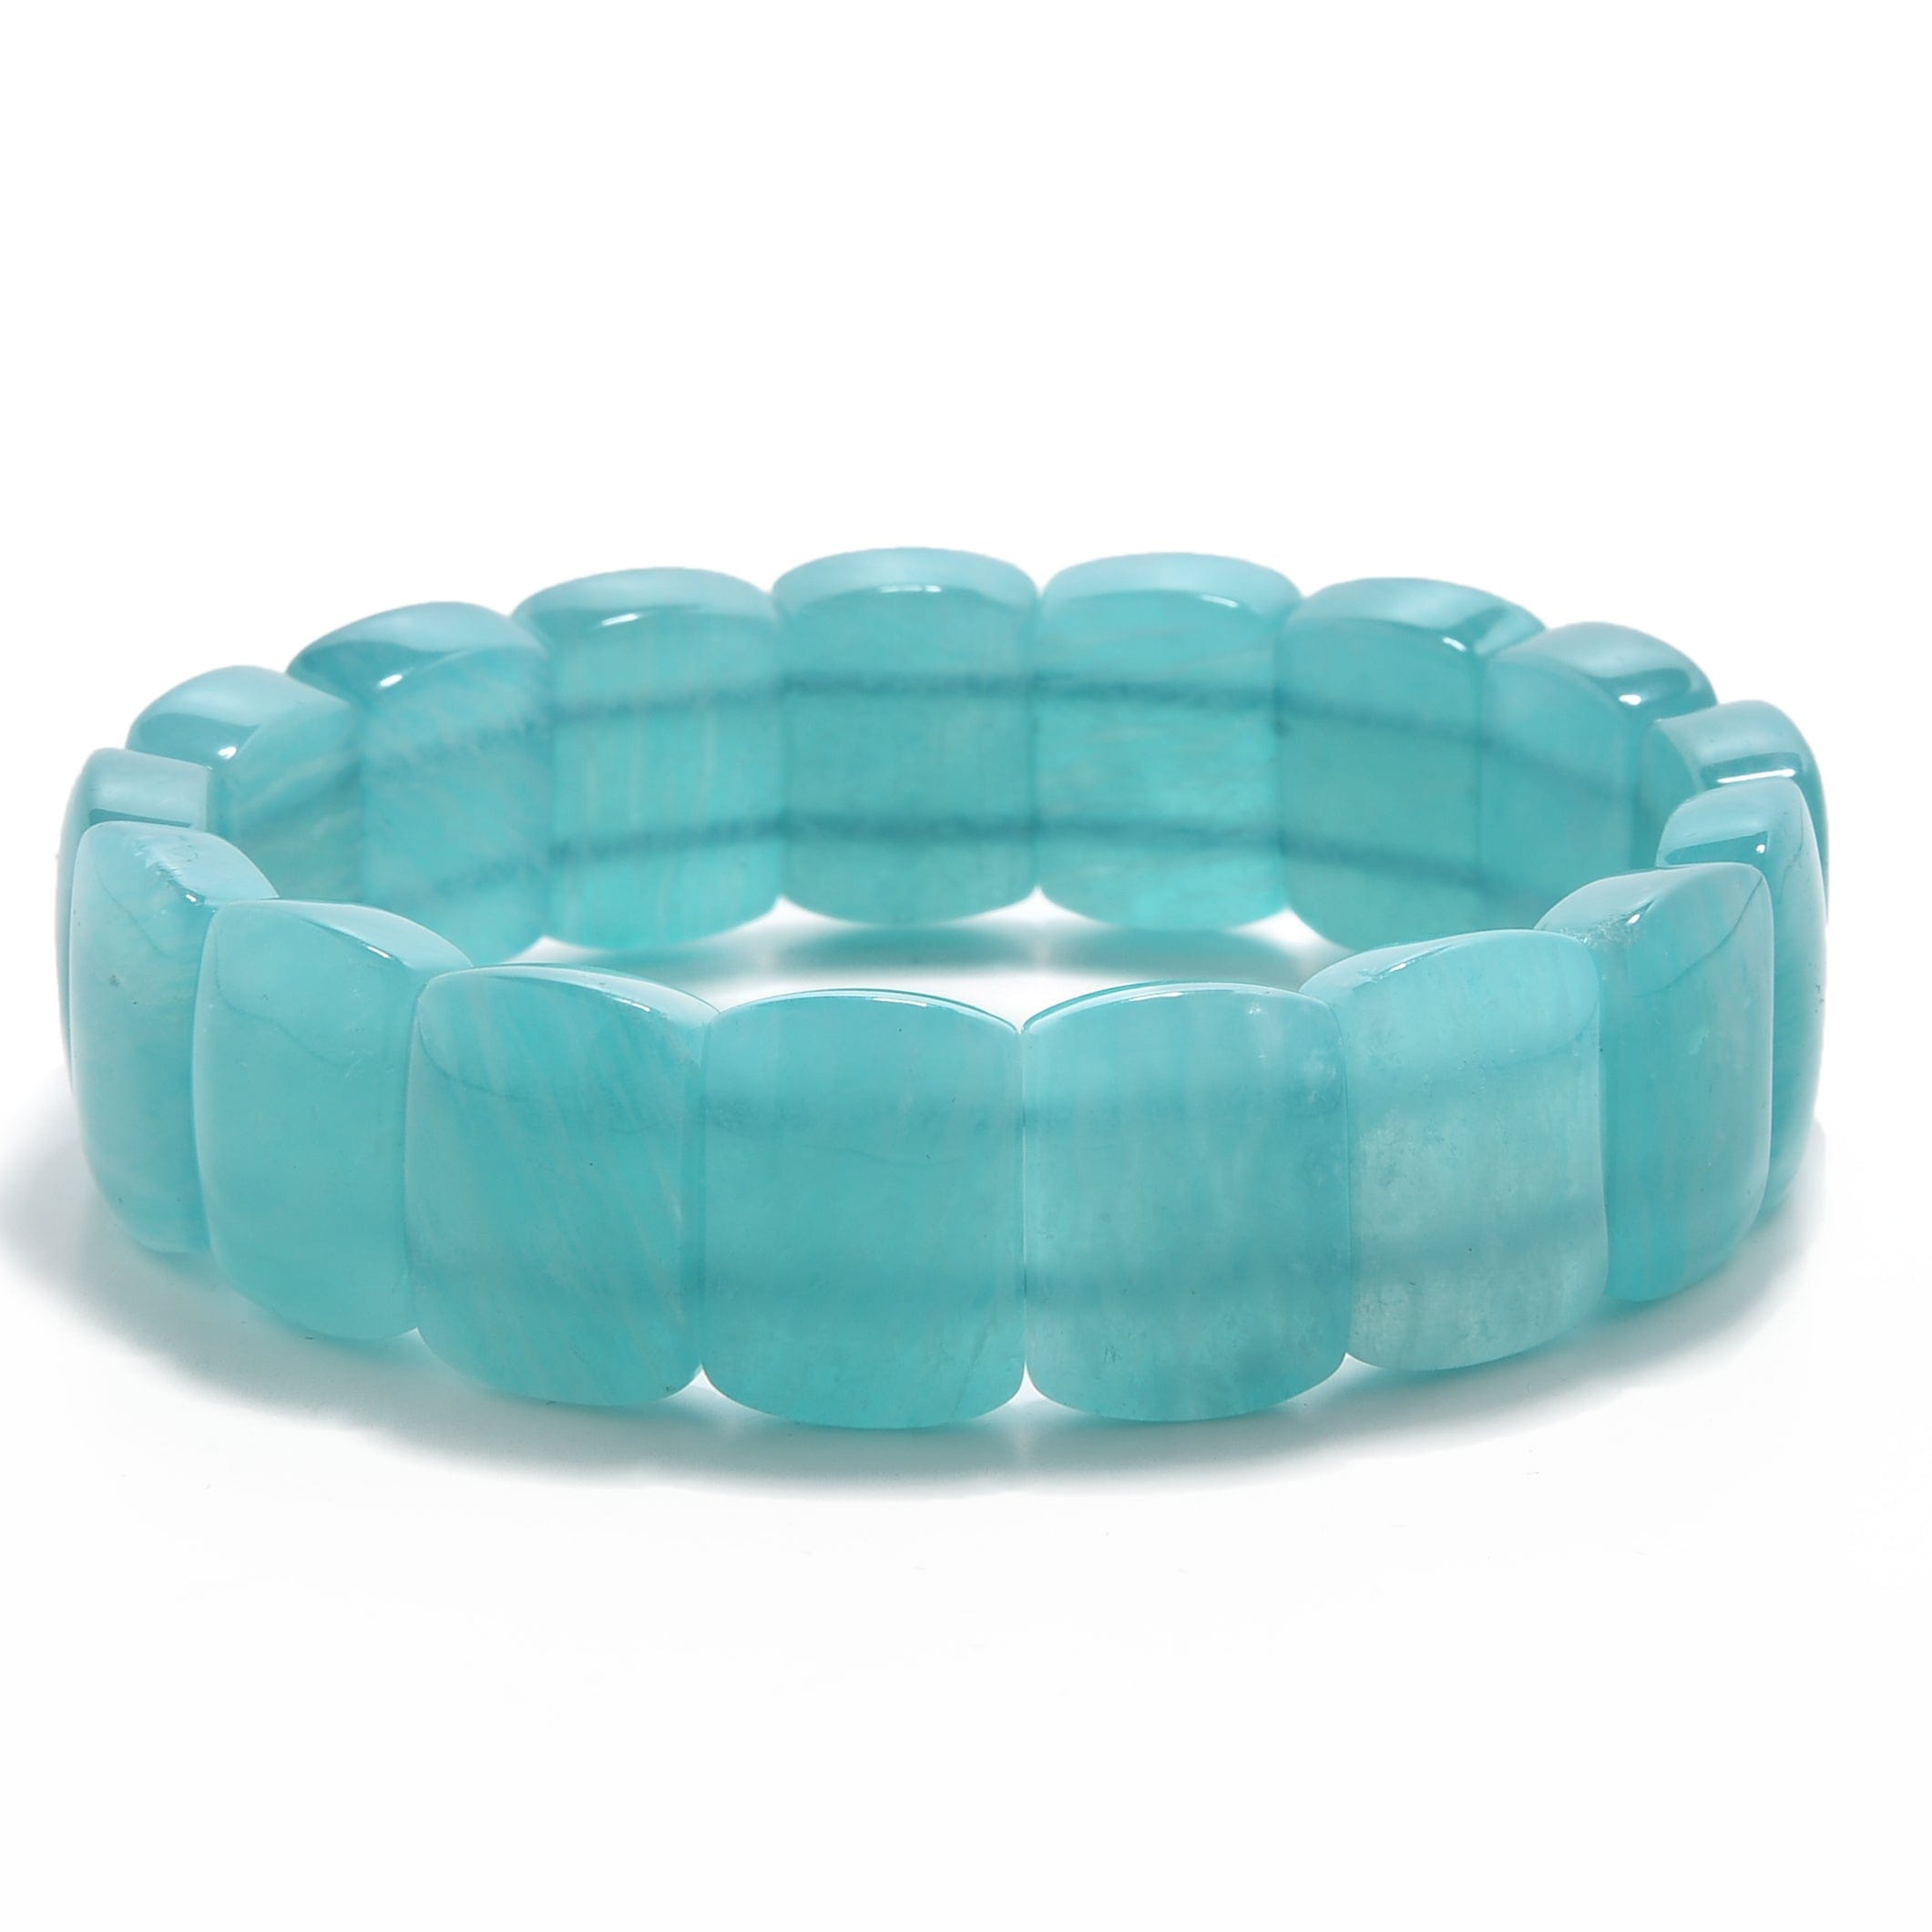 Kalifano Gemstone Bracelets Amazonite Gemstone 16mm Beads Elastic Bracelet OLIVE-BGP-014